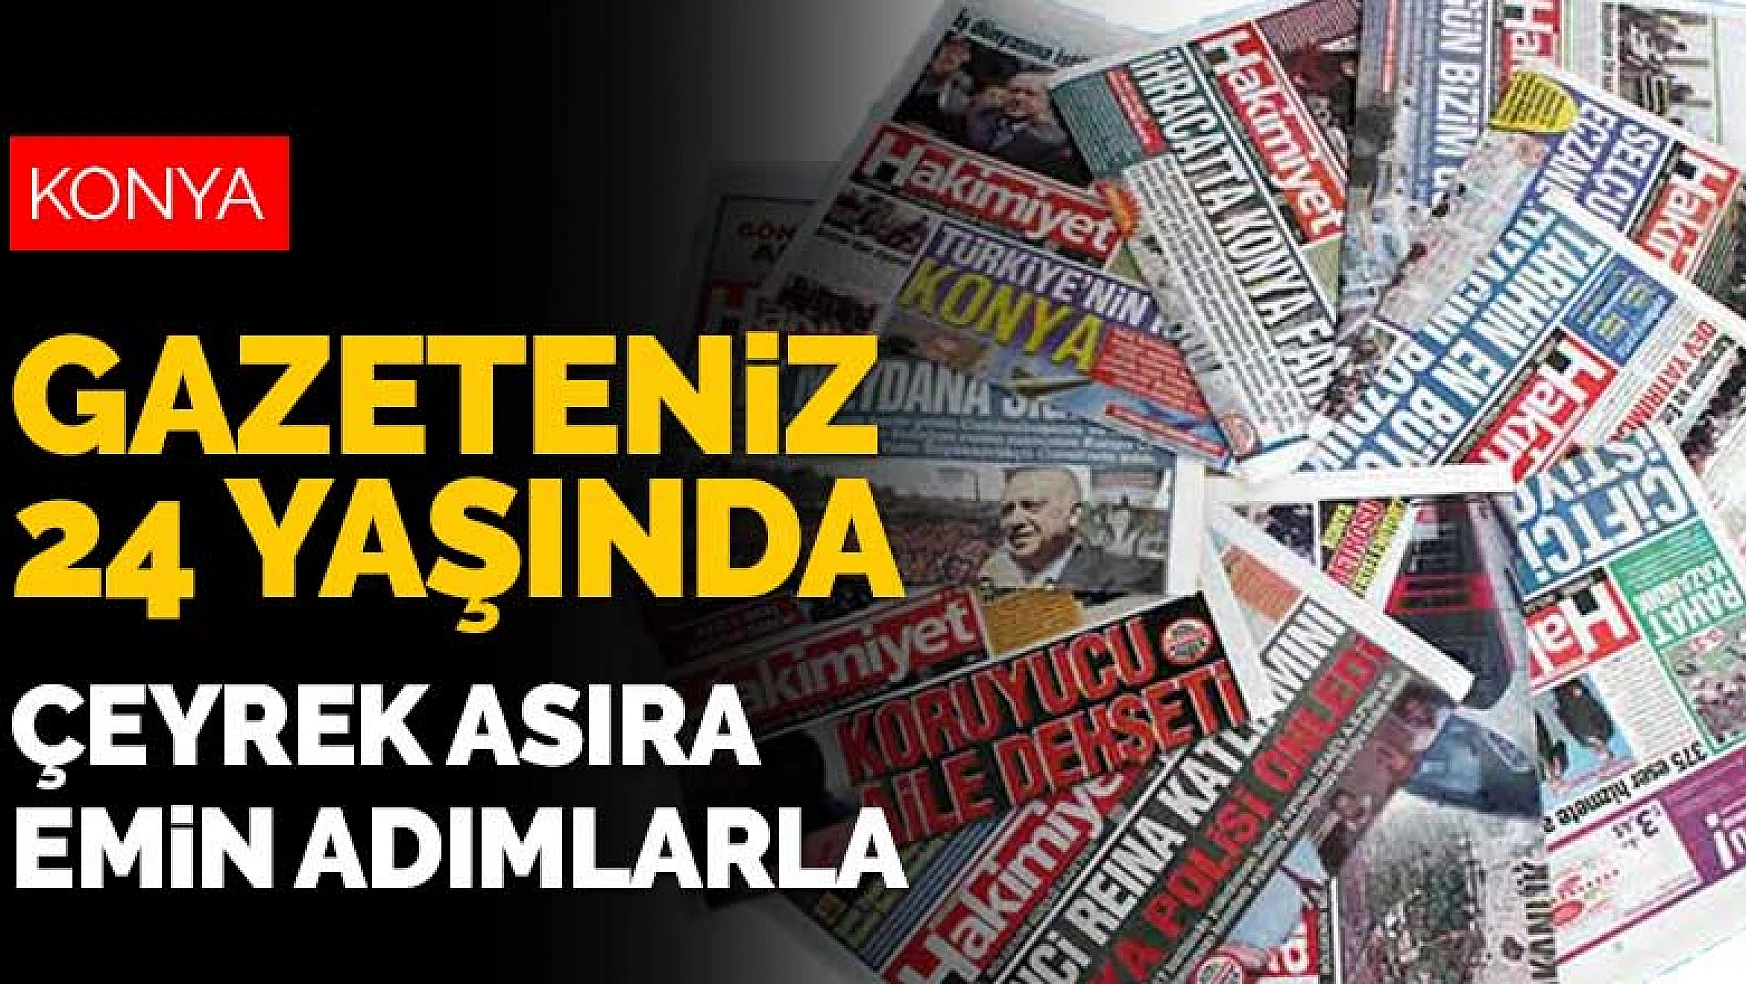 Konya Hakimiyet Gazetesi 24 yaşında